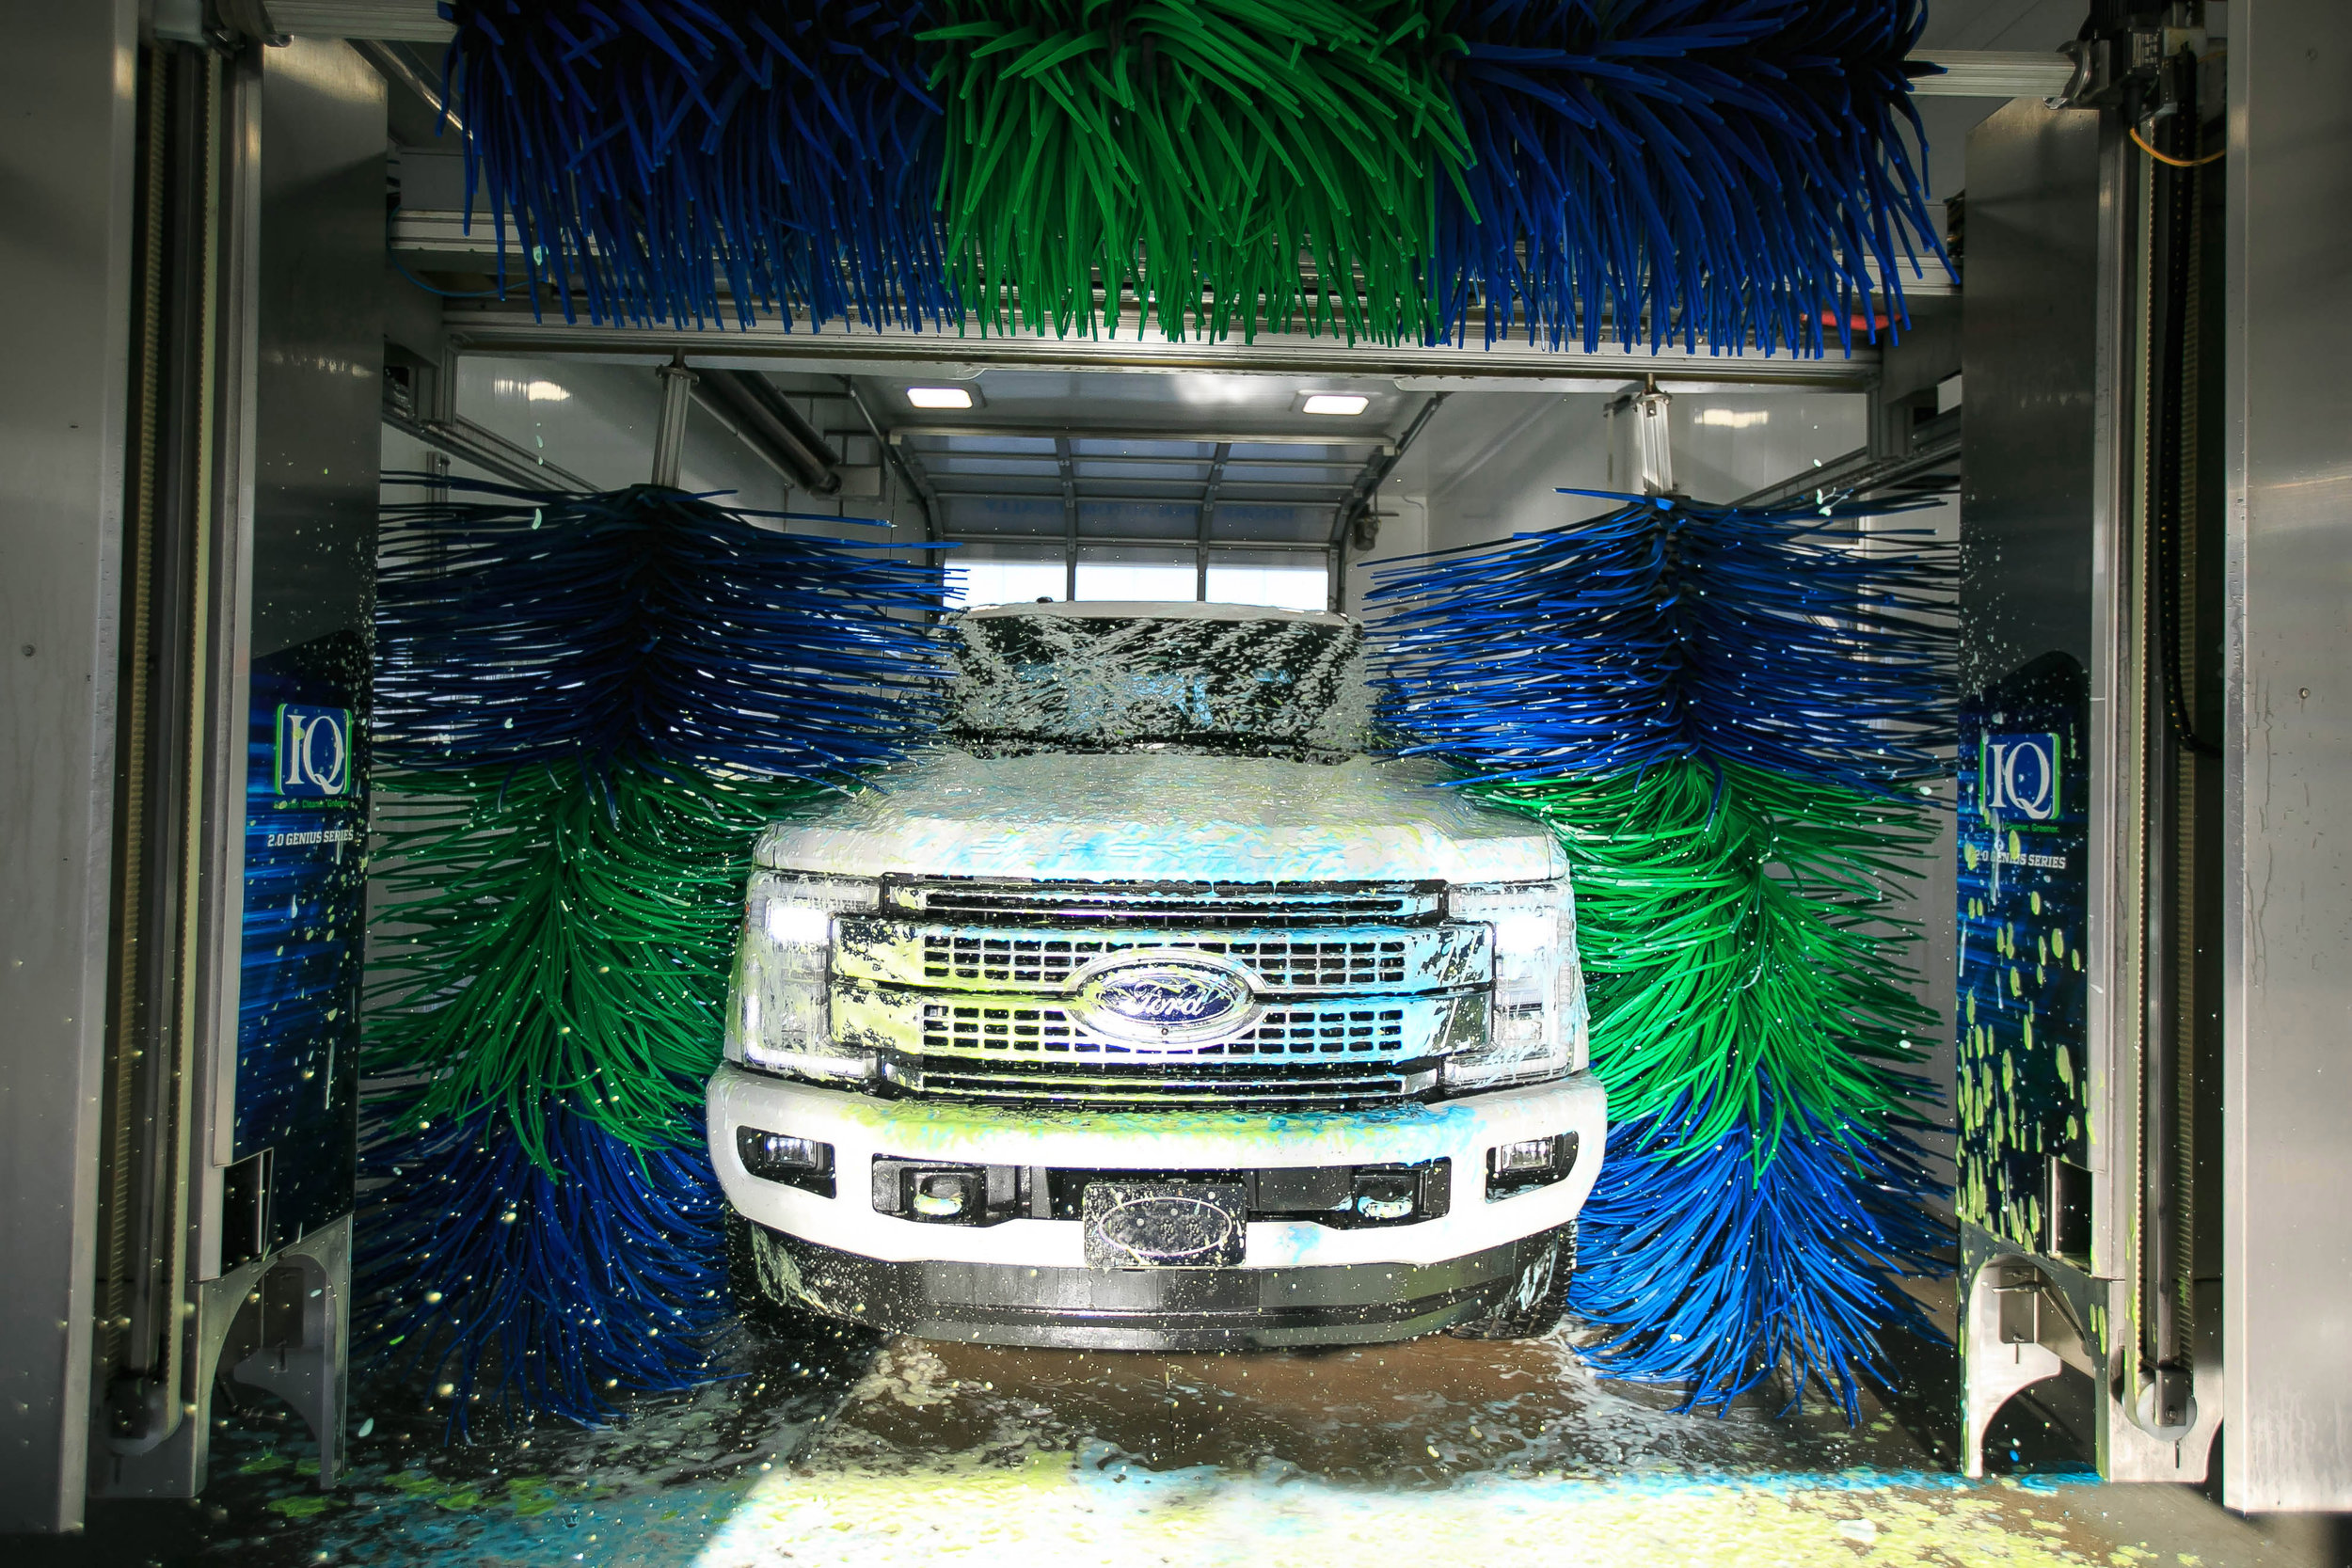 Car Wash Installation, Car Wash